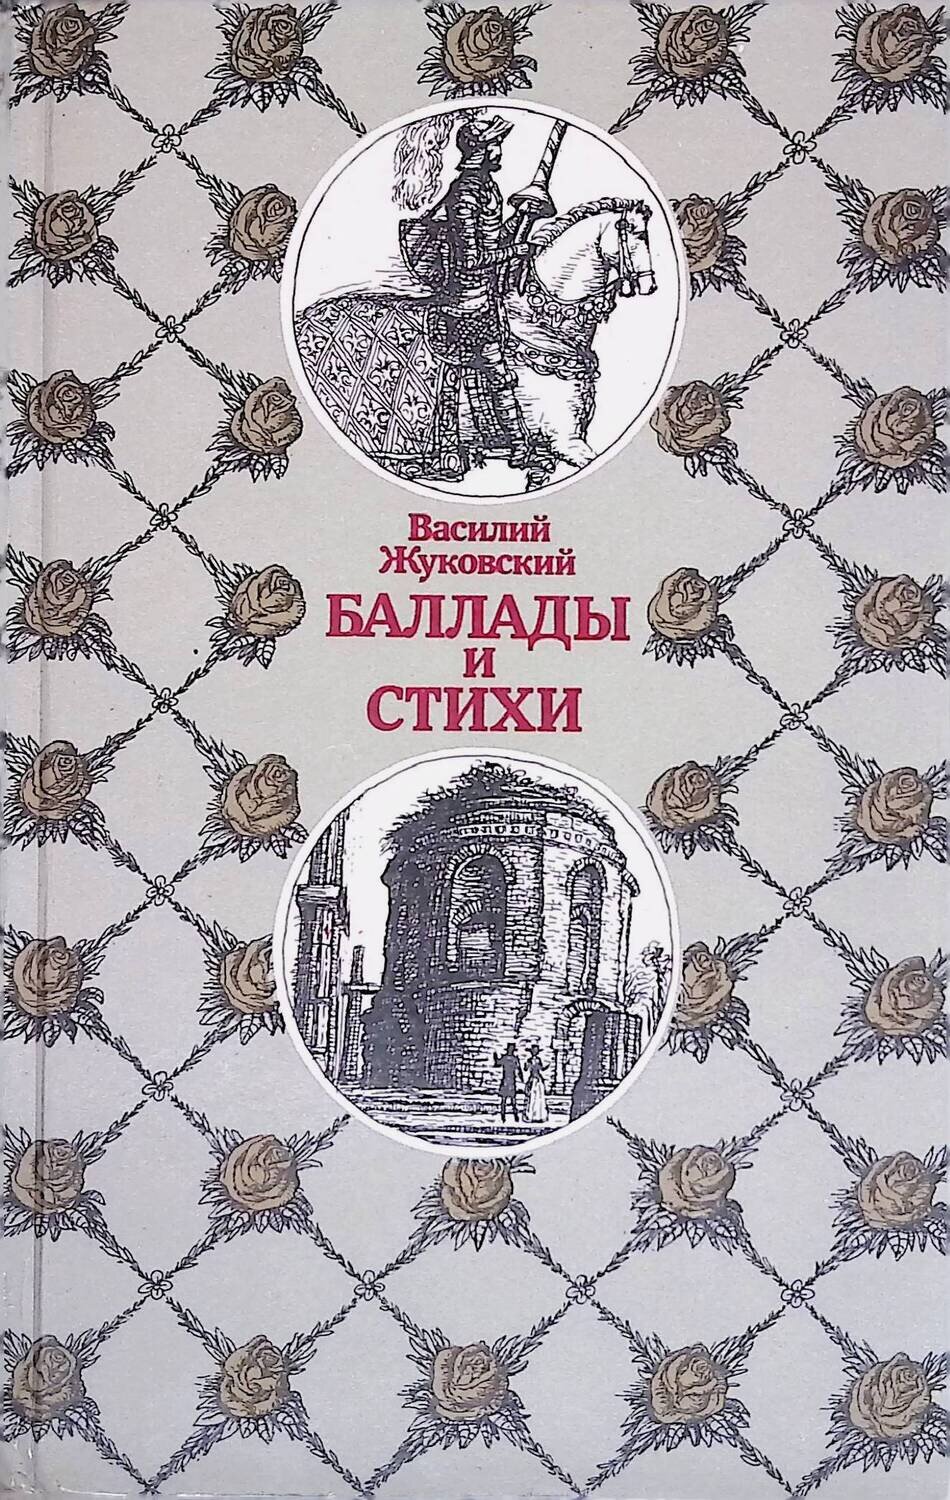 Баллады и стихи; Жуковский Василий Андреевич